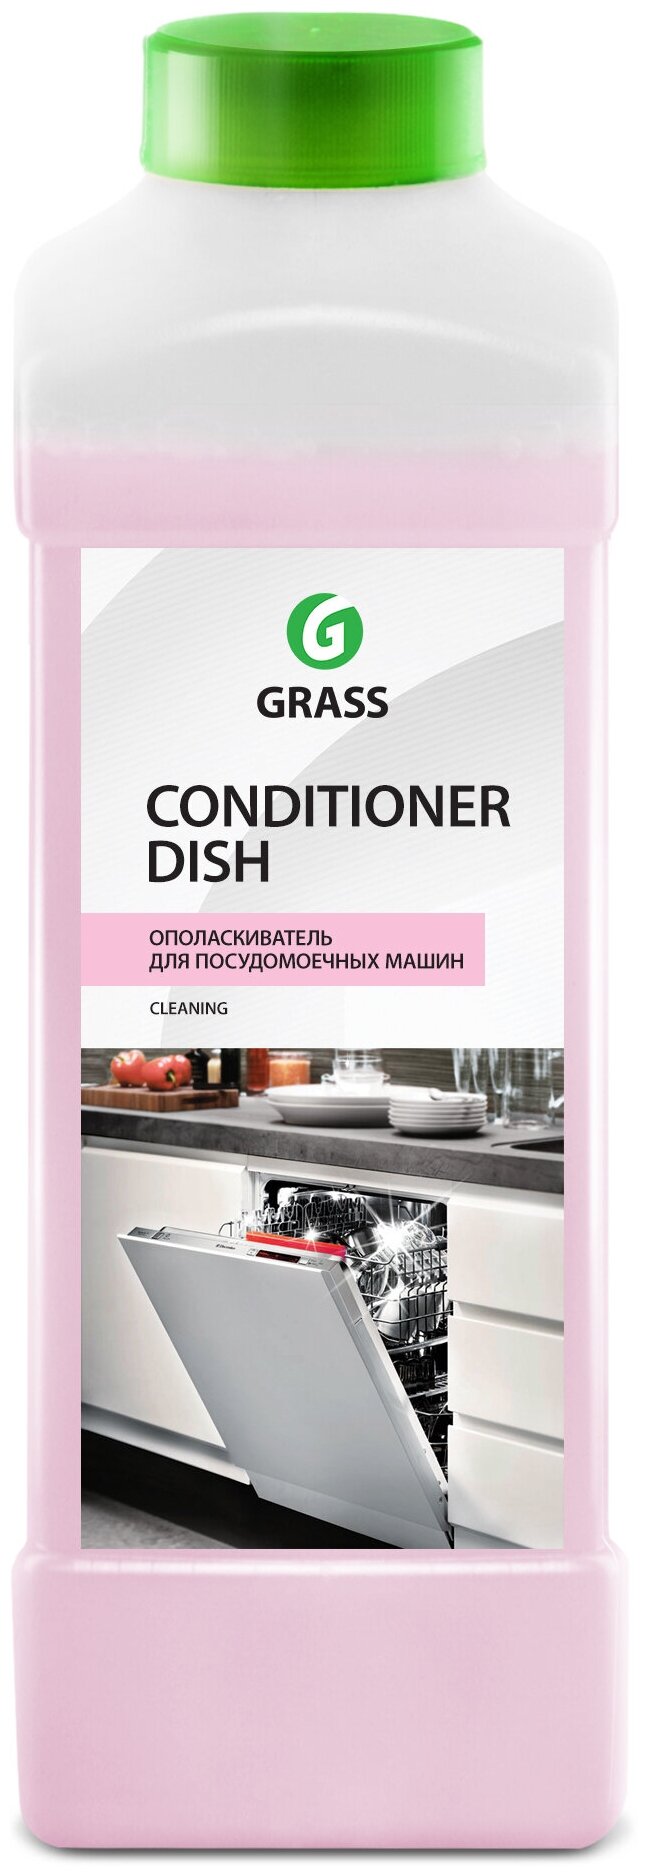 Grass Ополаскиватель для посудомоечных машин Conditioner Dish 1л средство жидкость для мытья посуды. кухня - фотография № 2